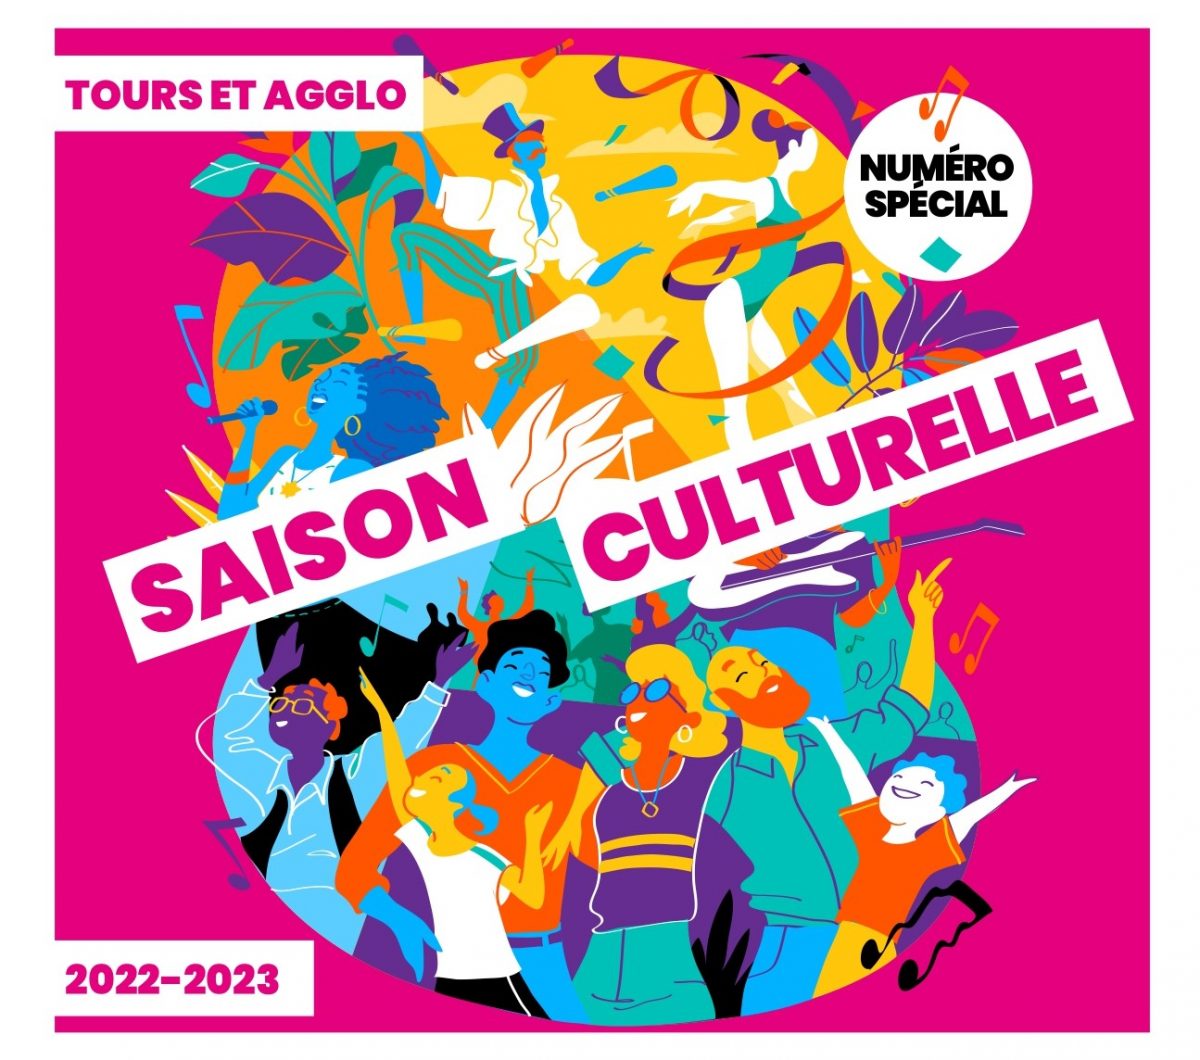 Tours & agglo : Retrouvez notre numéro spécial saison culturelle 2022-2023